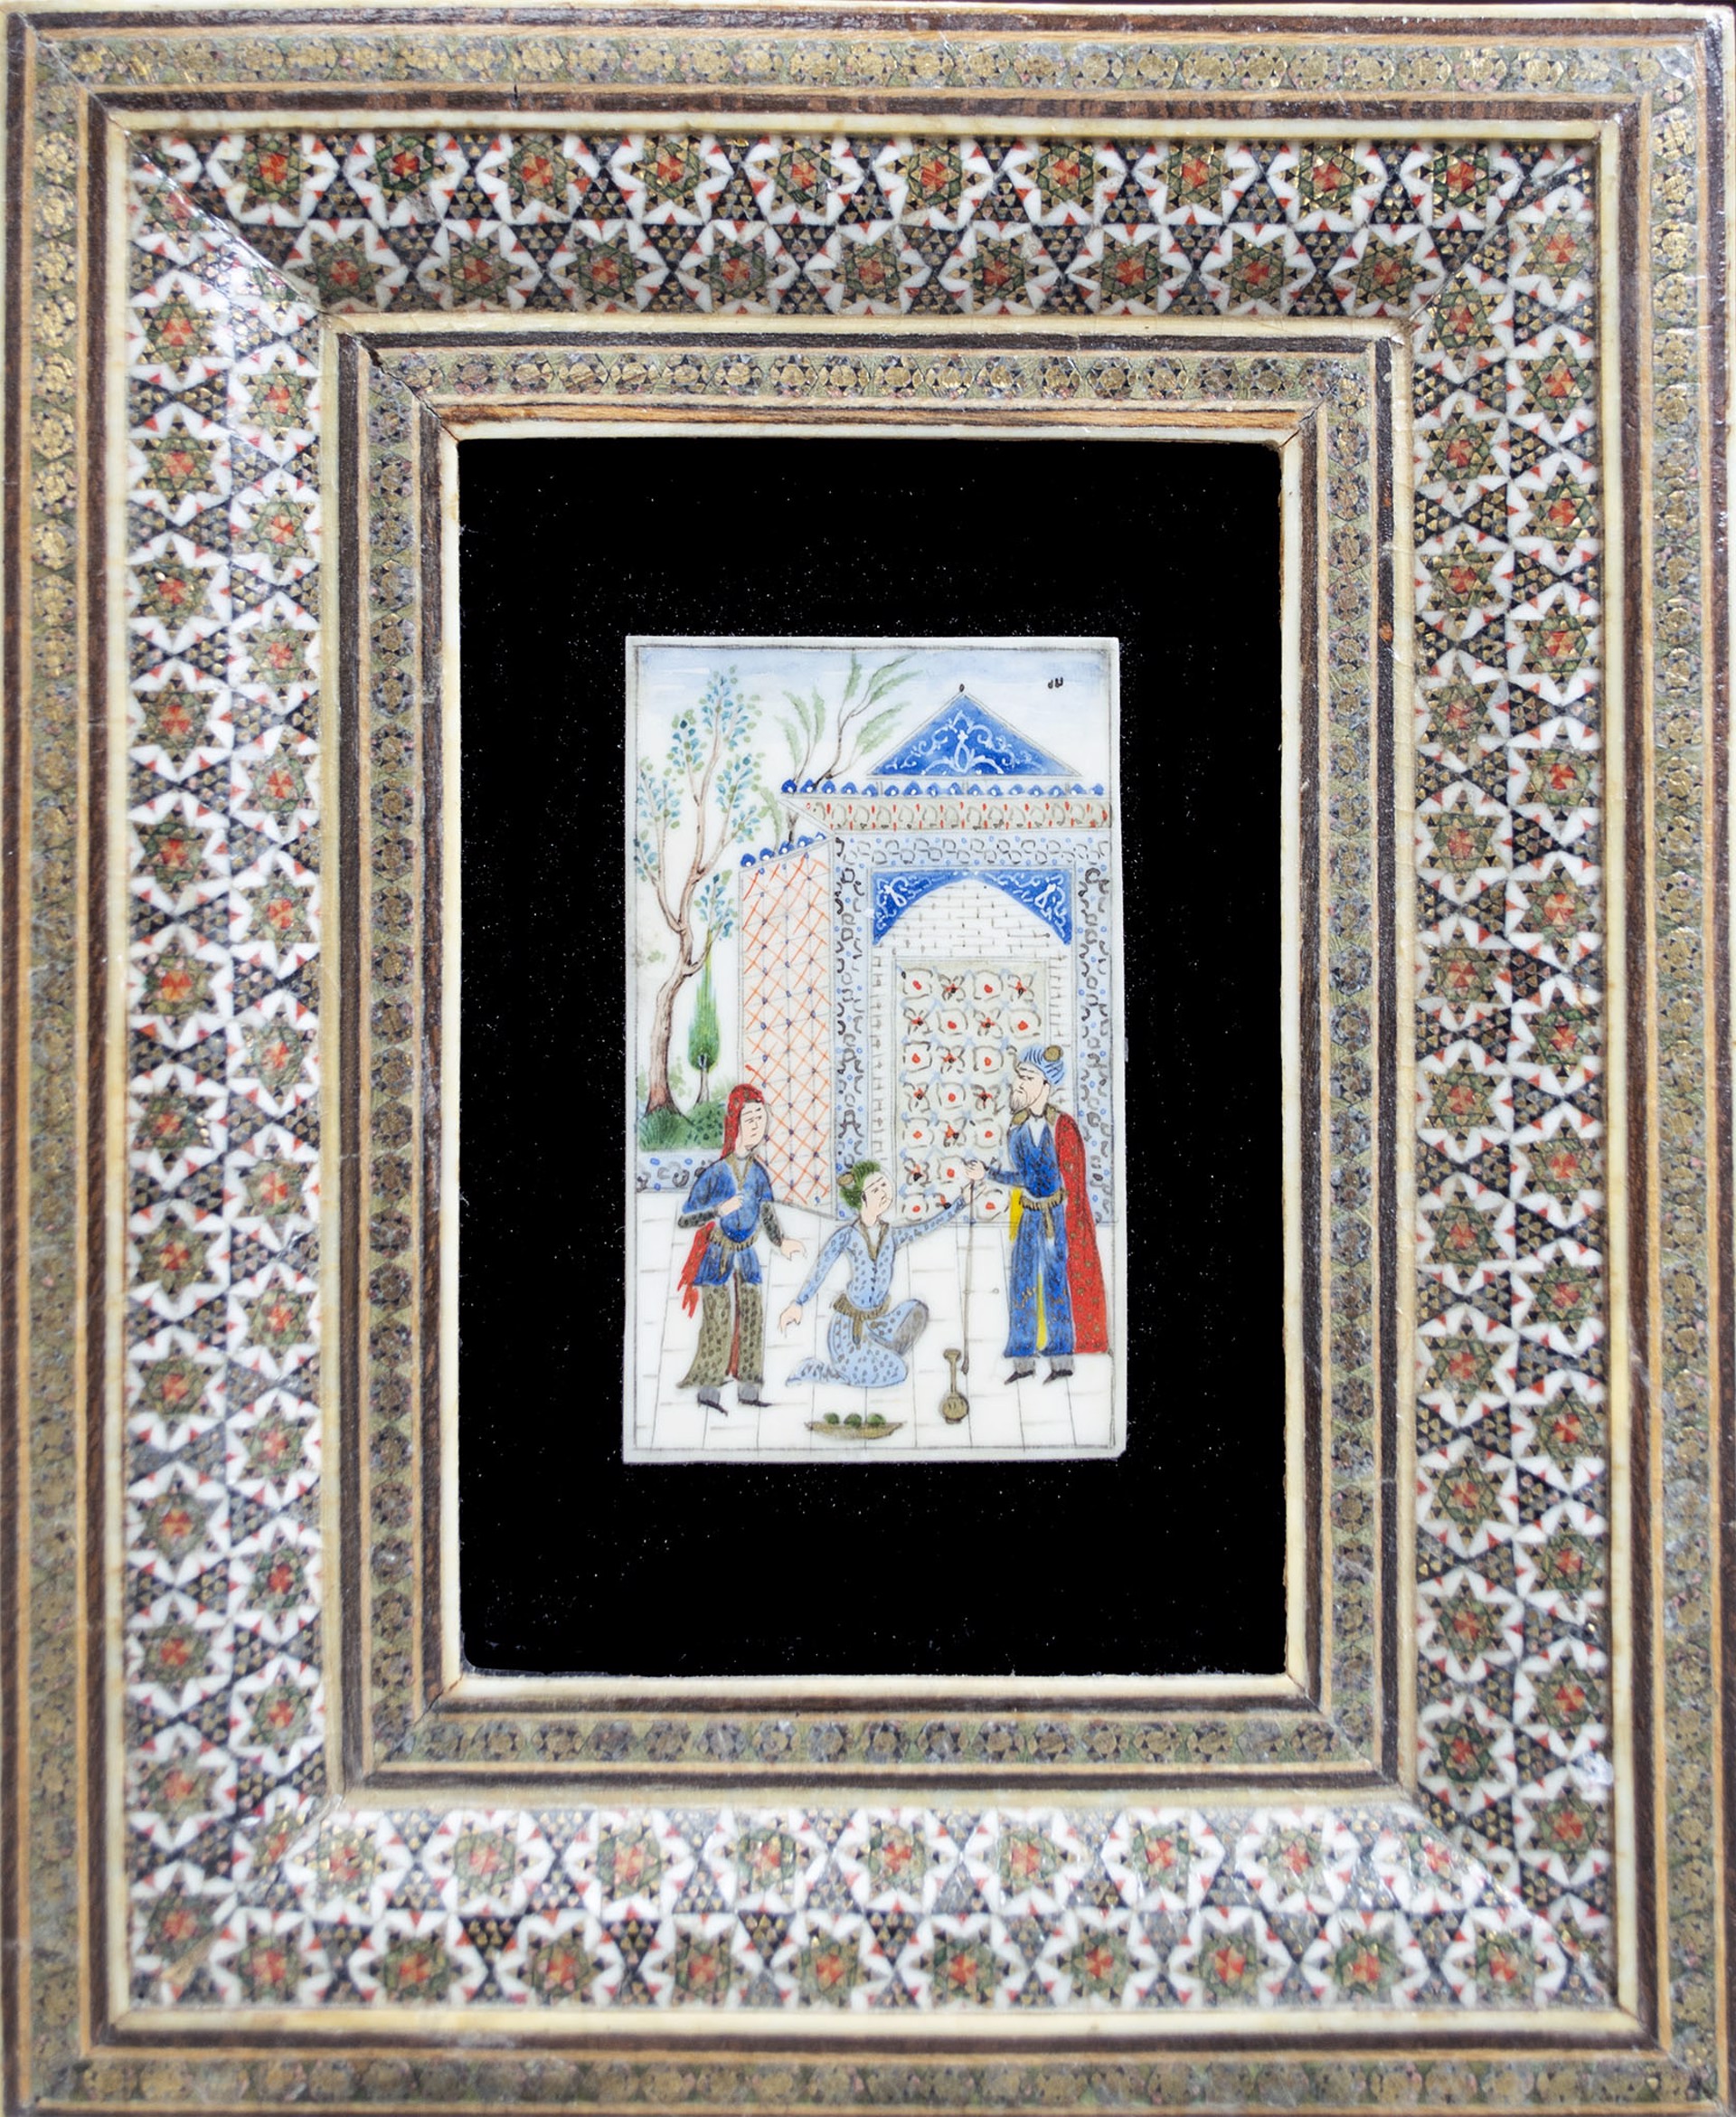 Persian Miniature (Three Figures Conversing) by Persian